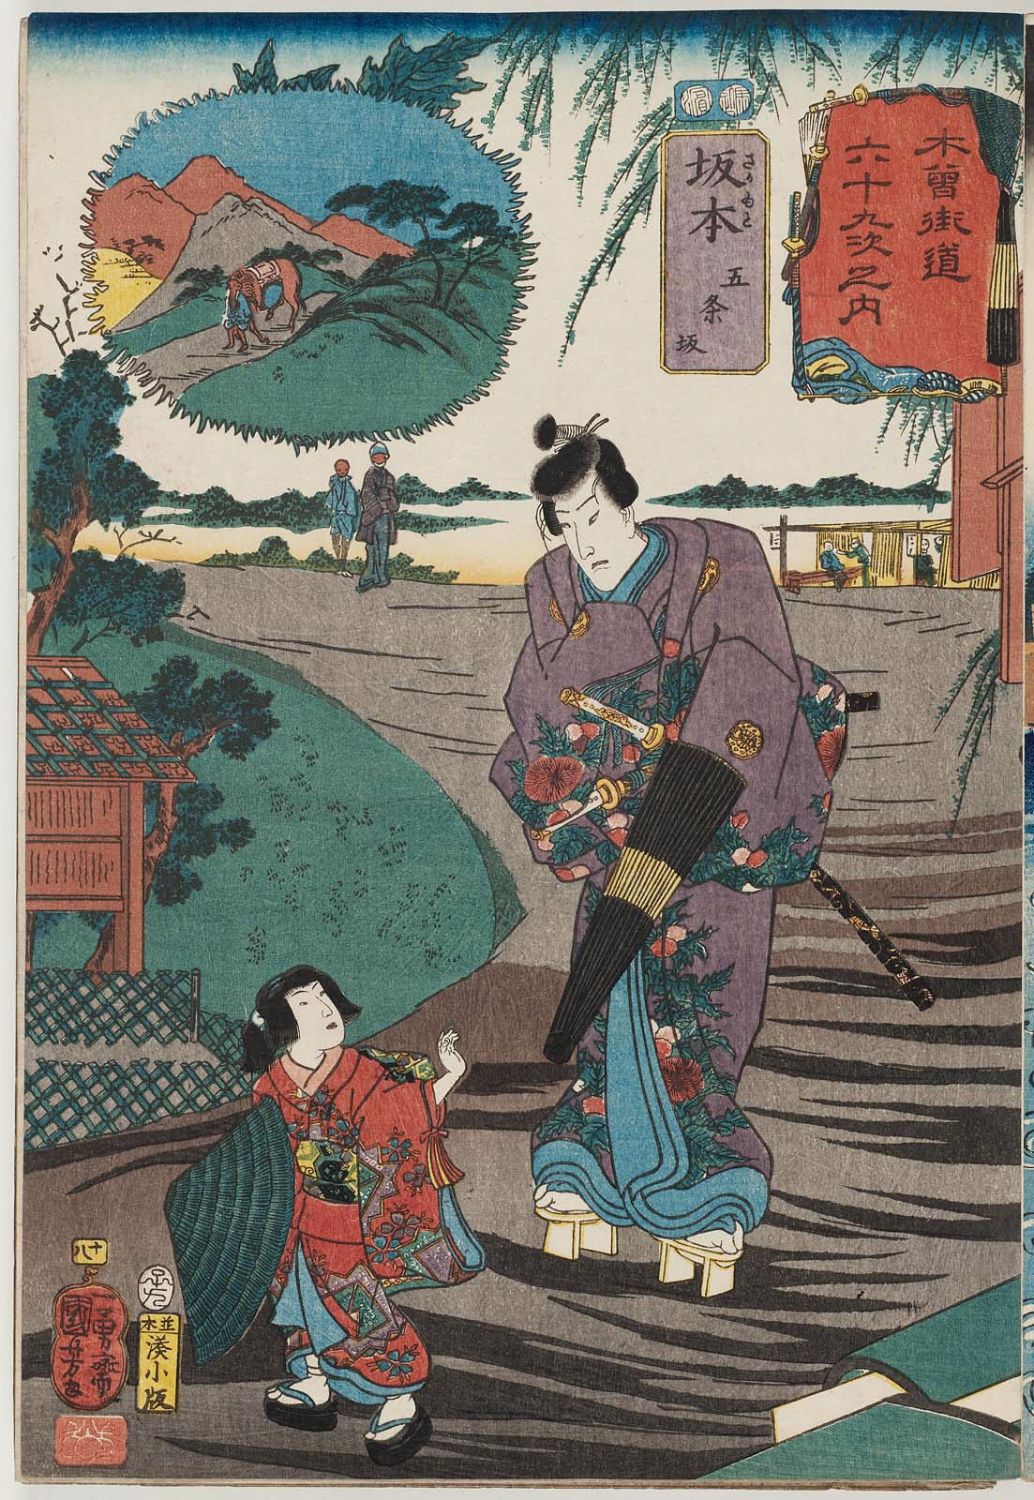 Utagawa Kuniyoshi: No. 18 Sakamoto 坂本/ Kisokaido rokujoku tsugi 